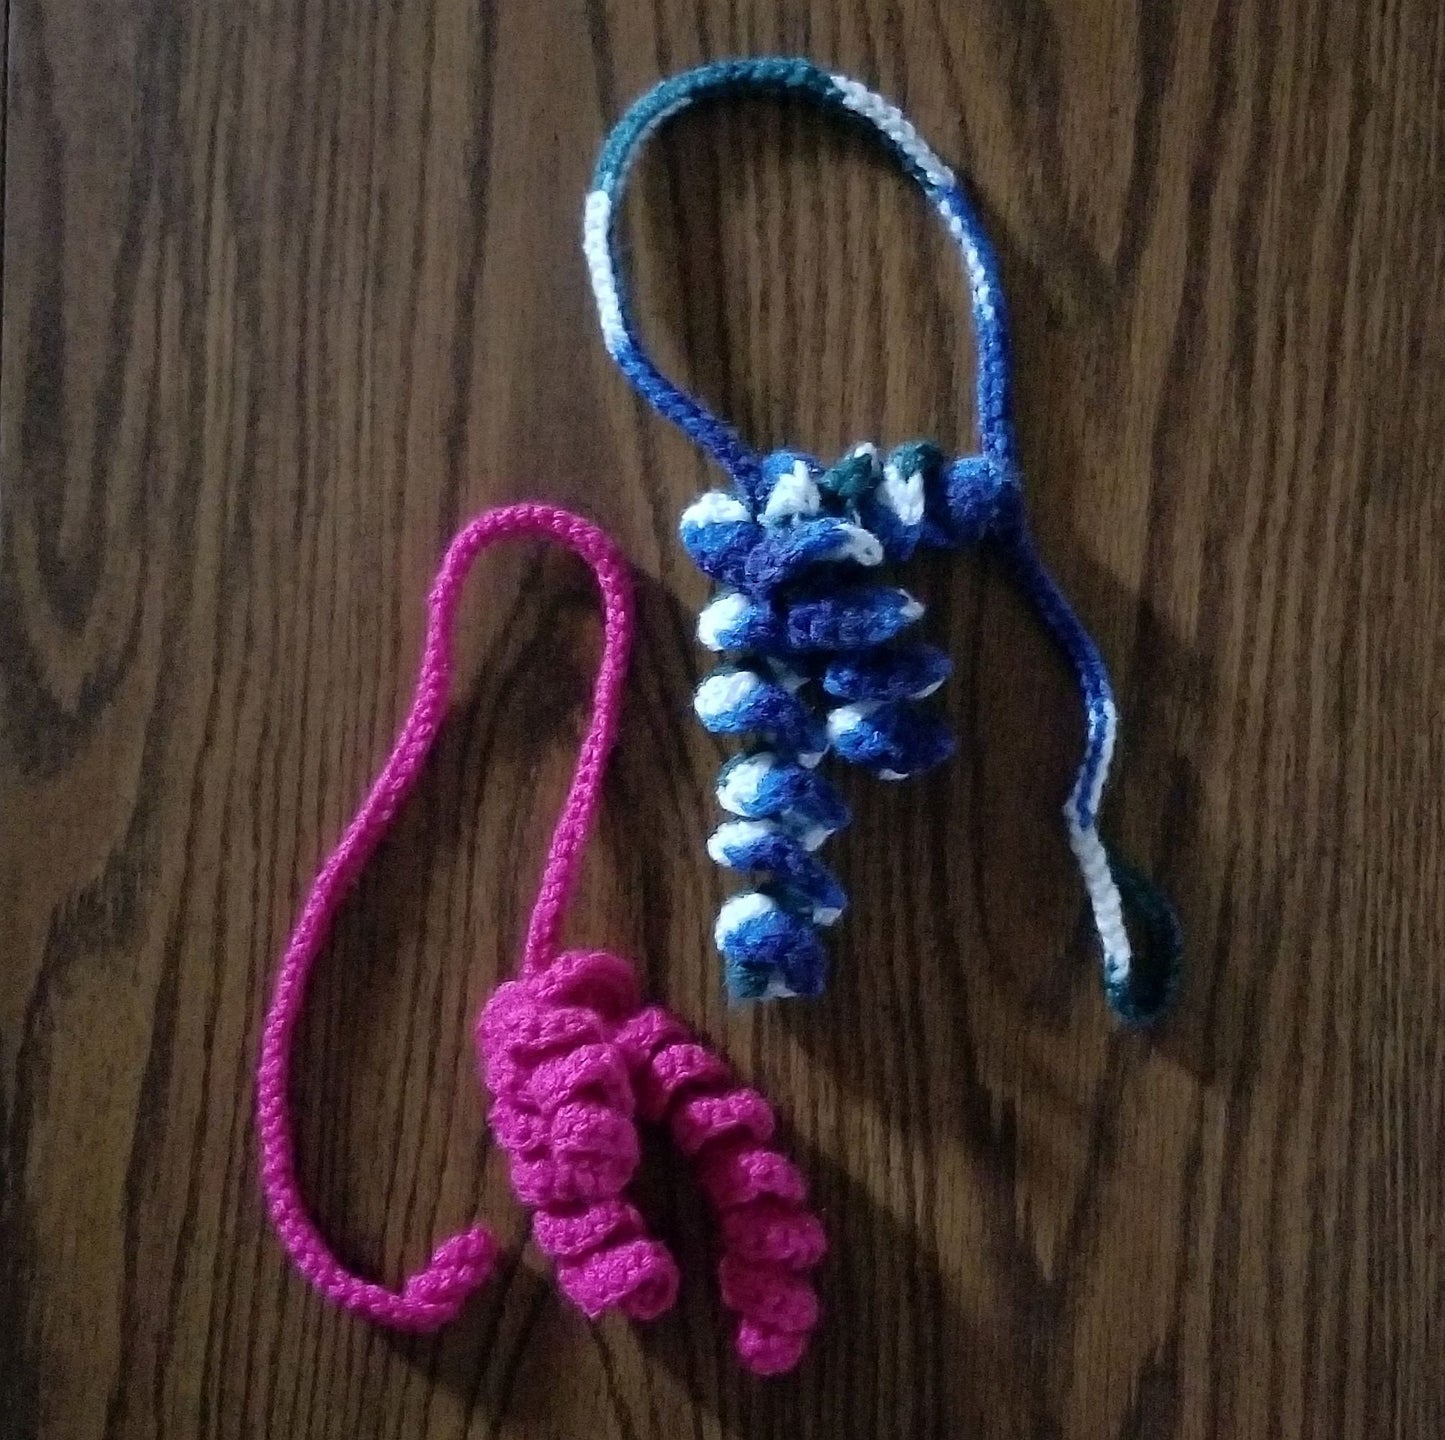 Doorknob Cat Toy Crochet Pattern, PDF Digital Download